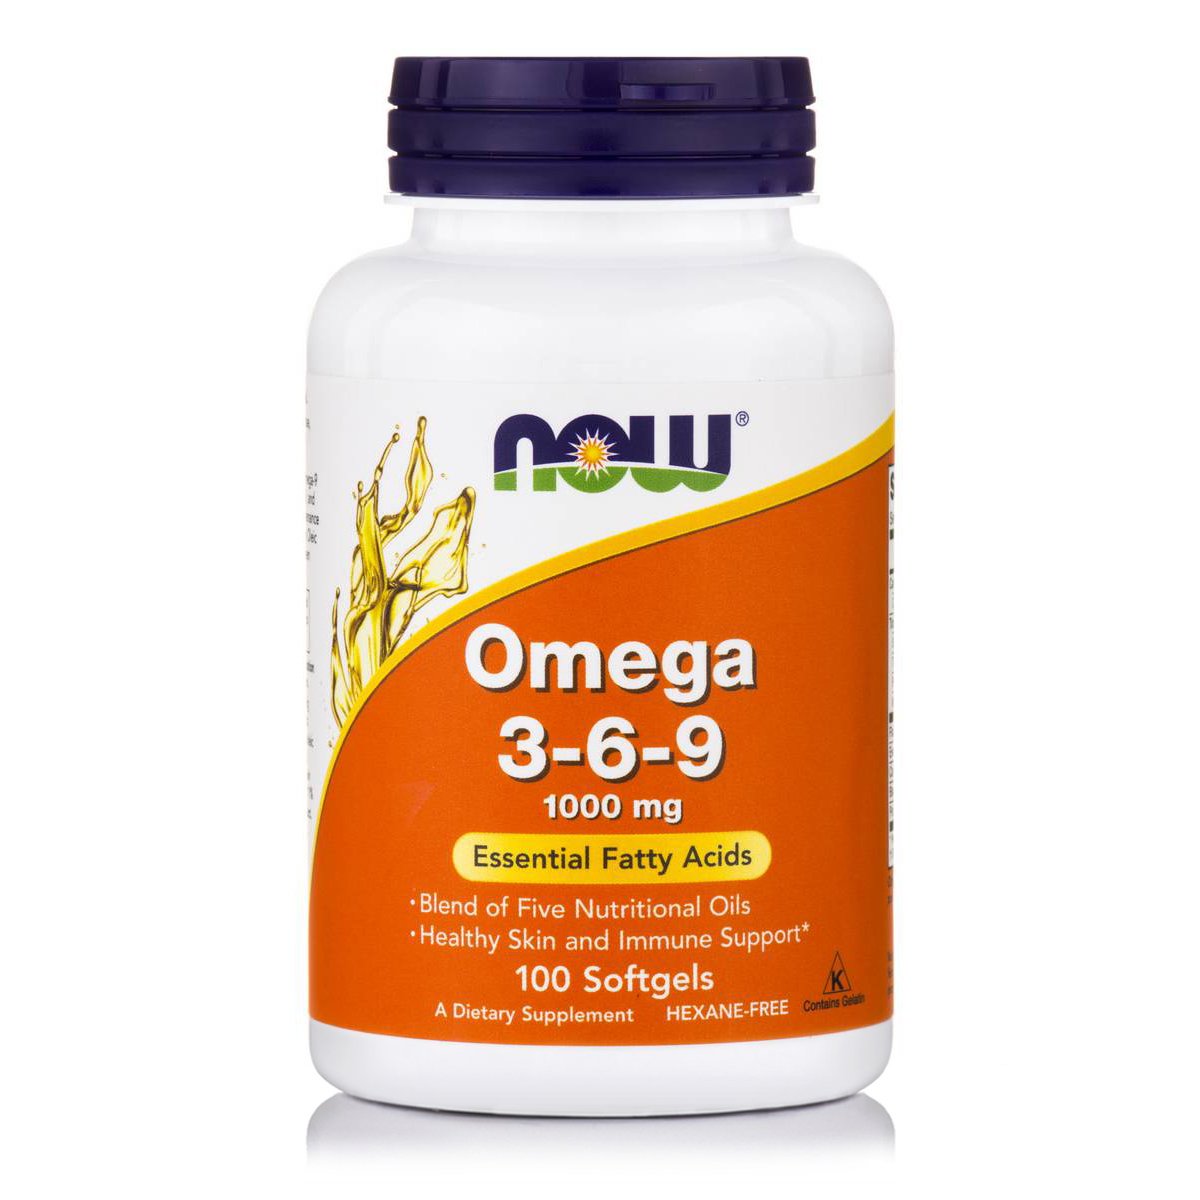 omega 3 6 9